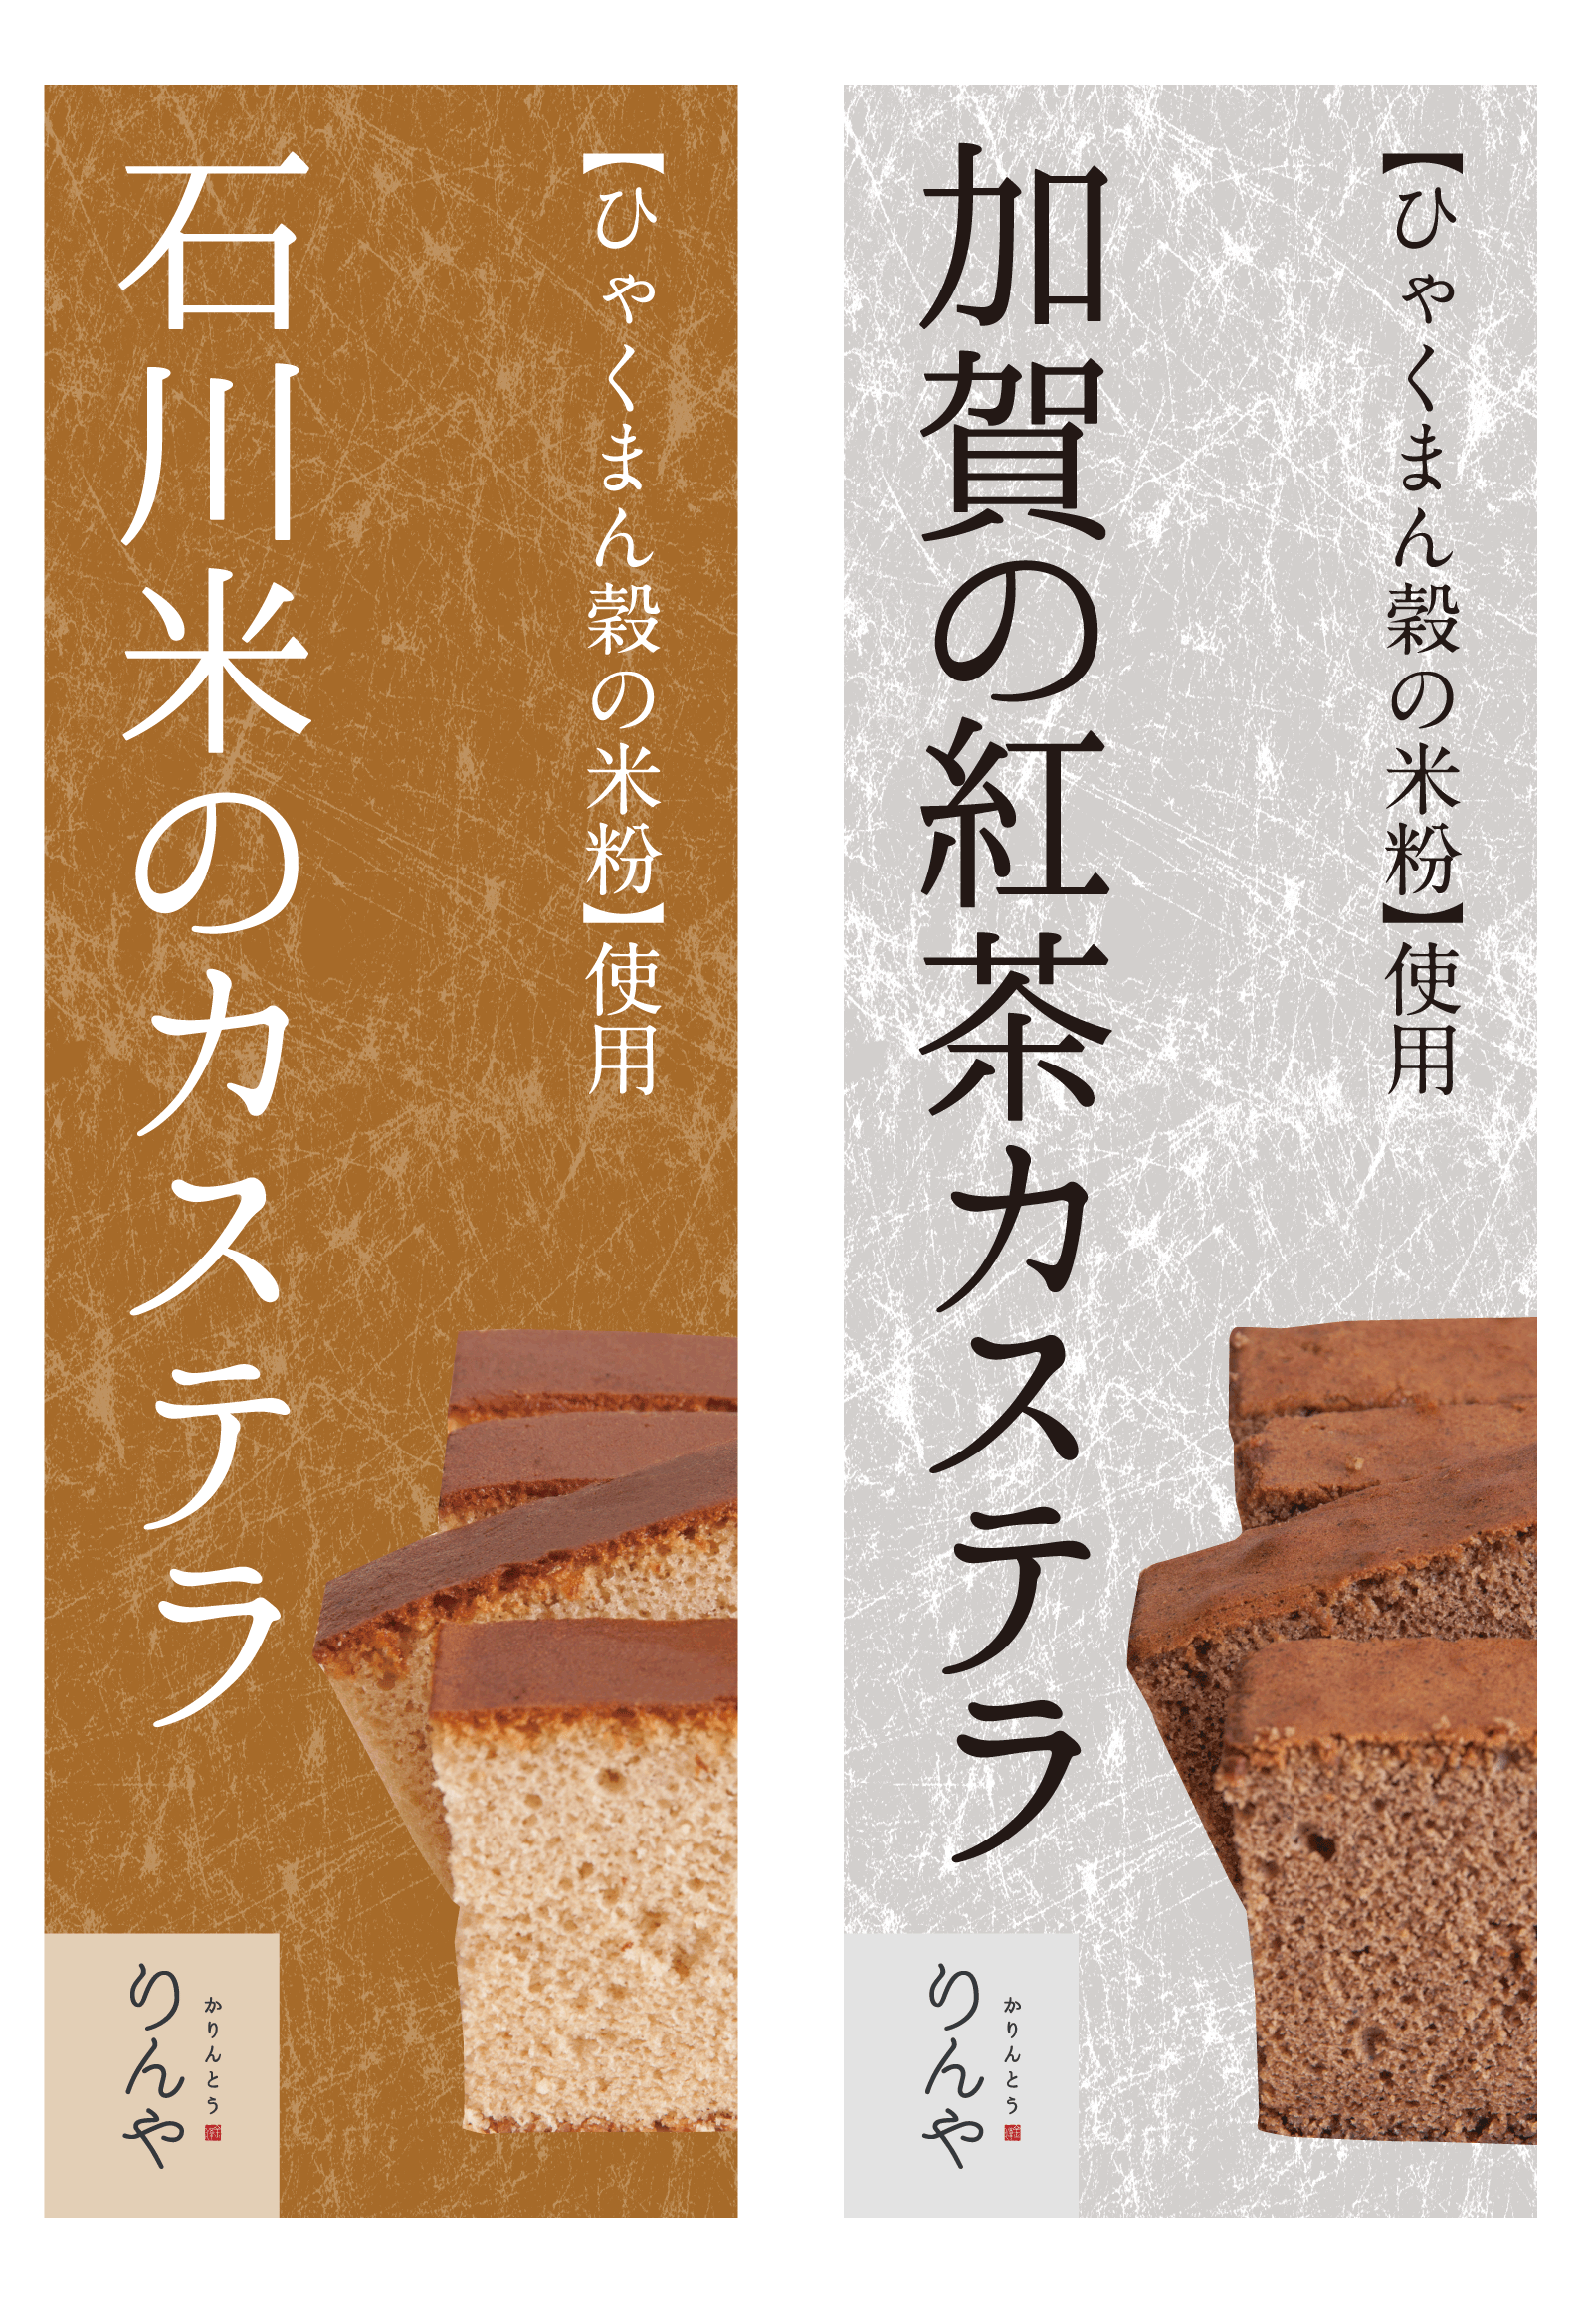 「石川米のカステラ」と「加賀の紅茶カステラ」